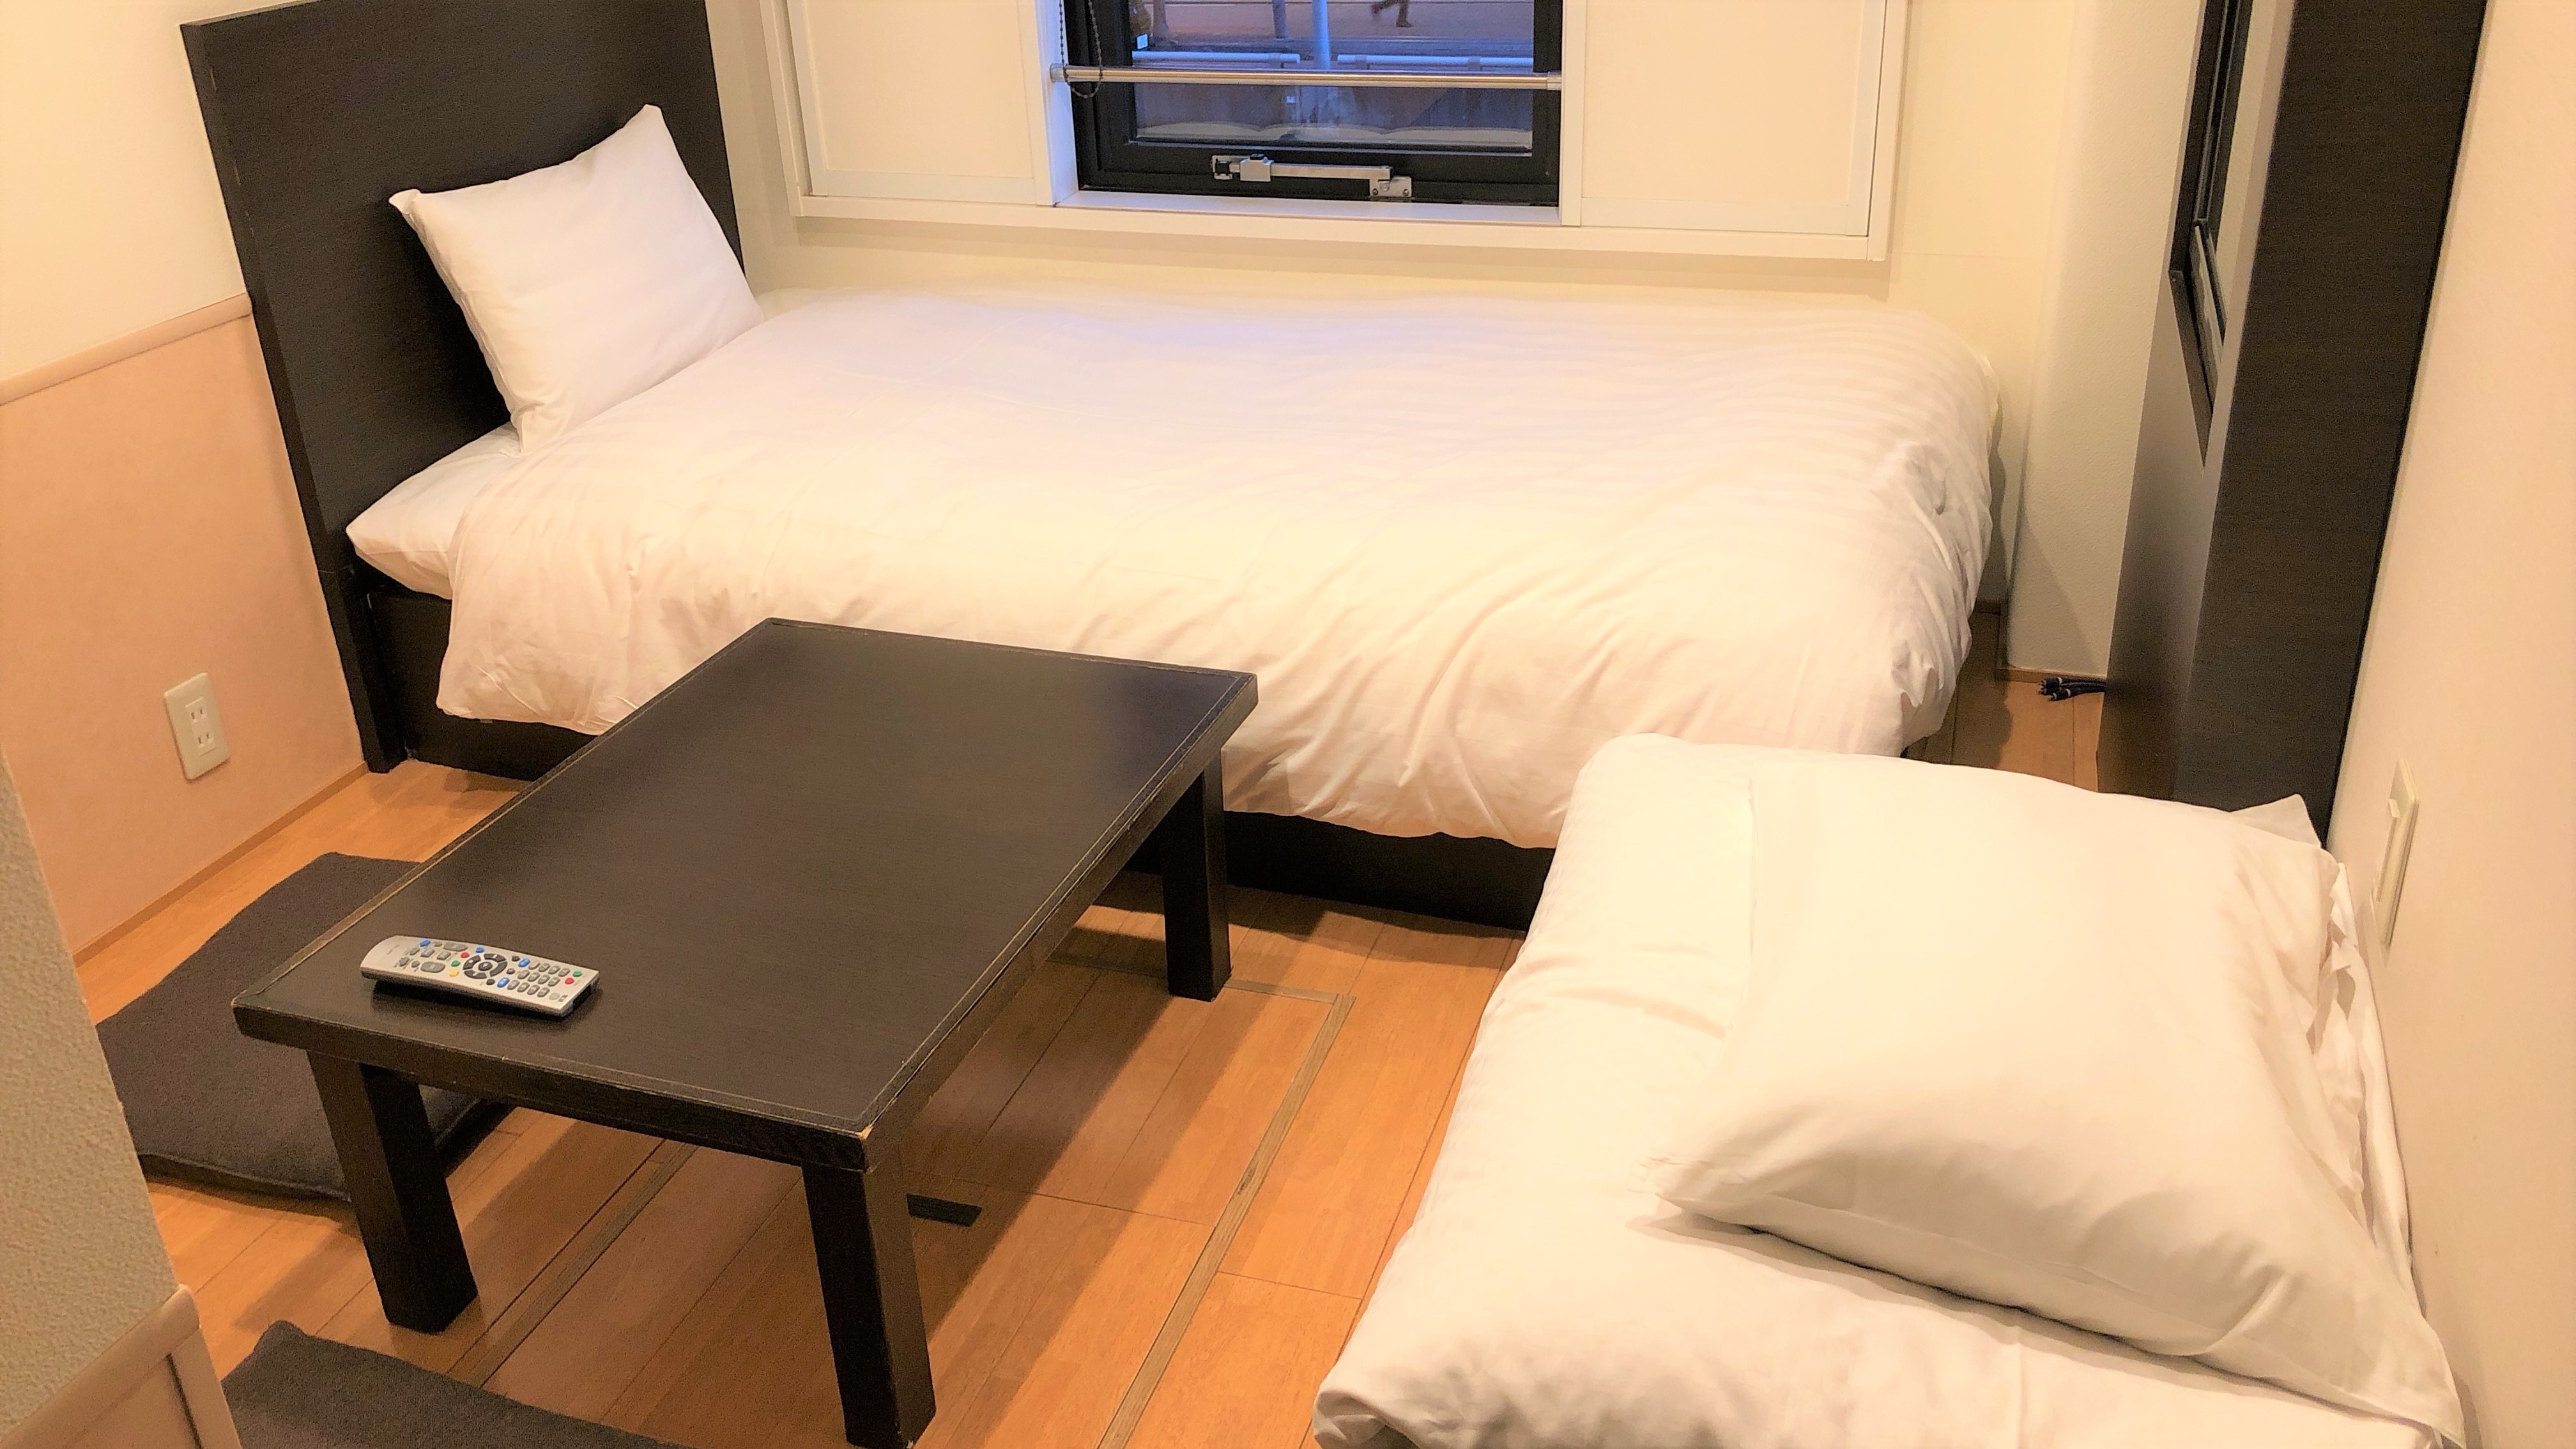 Kamar datar 12㎡ untuk 2 orang (tempat tidur / futon) Kamar bebas rokok di mana Anda dapat melepas sepatu dan bersantai)